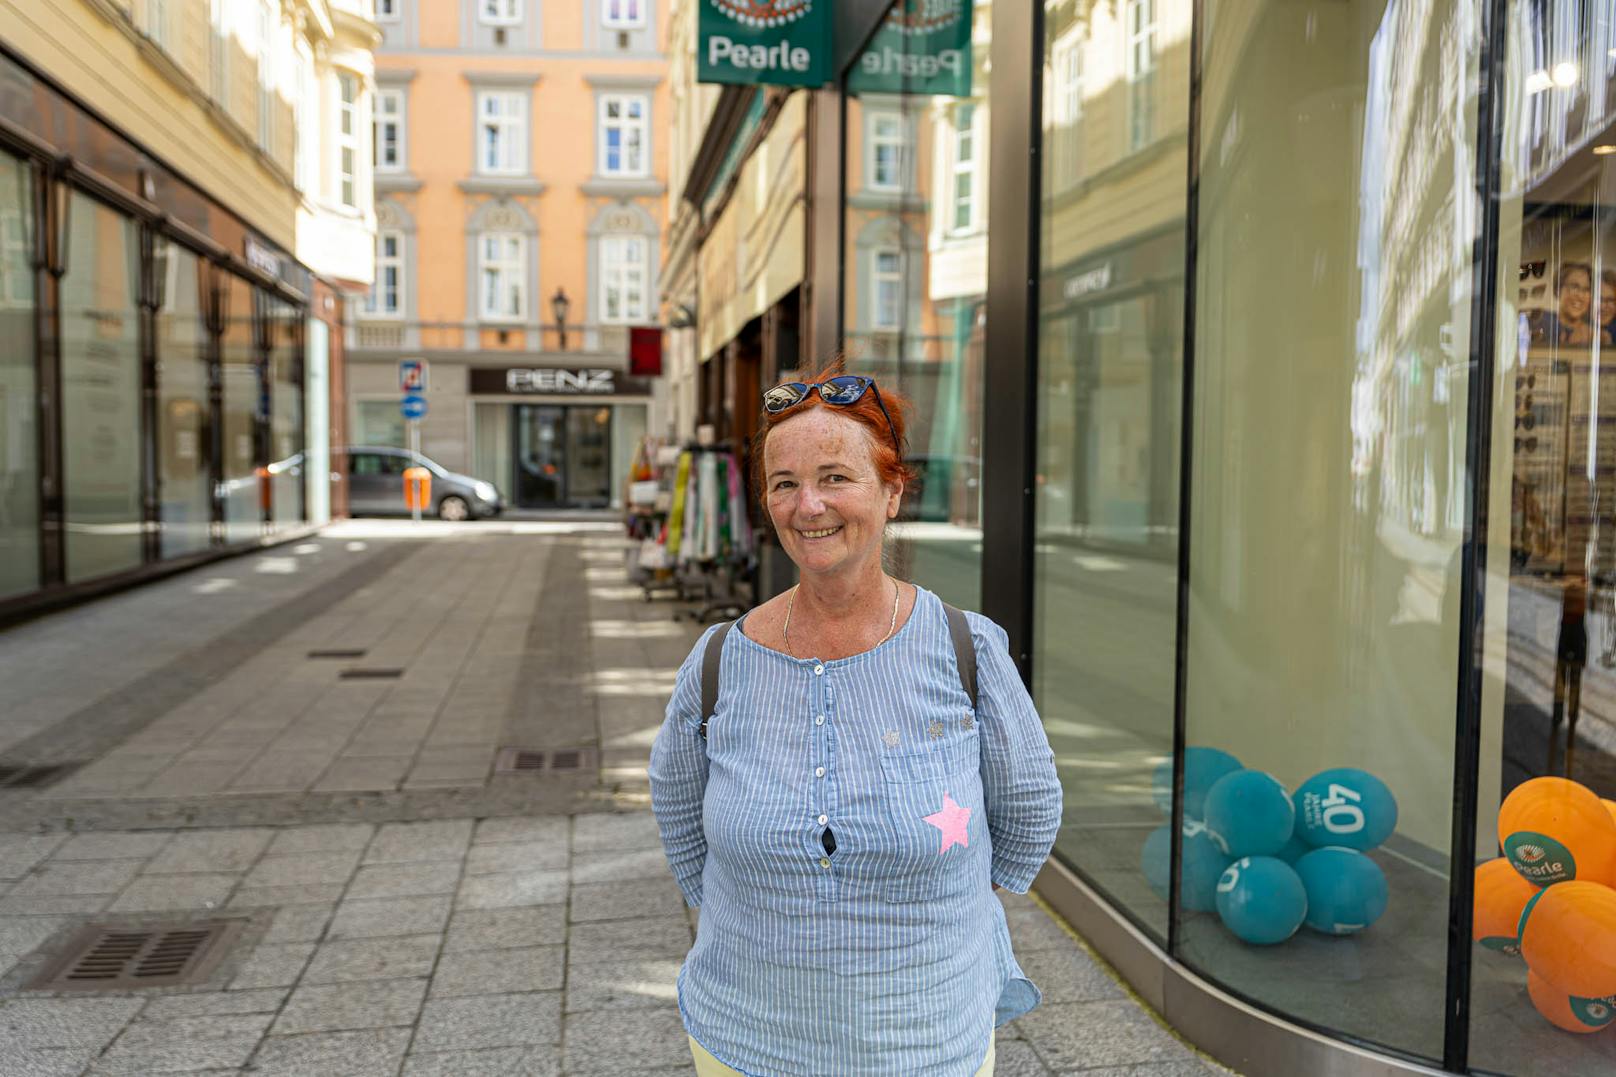 Christine H. (62), Pensionistin aus Ebelsberg:"Ich bin für eine Wiedereinführung, ja. Dort wo viele Menschen zusammenkommen sollten wir uns gegenseitig schützen. Wir wissen noch viel zu wenig über dieses Virus."